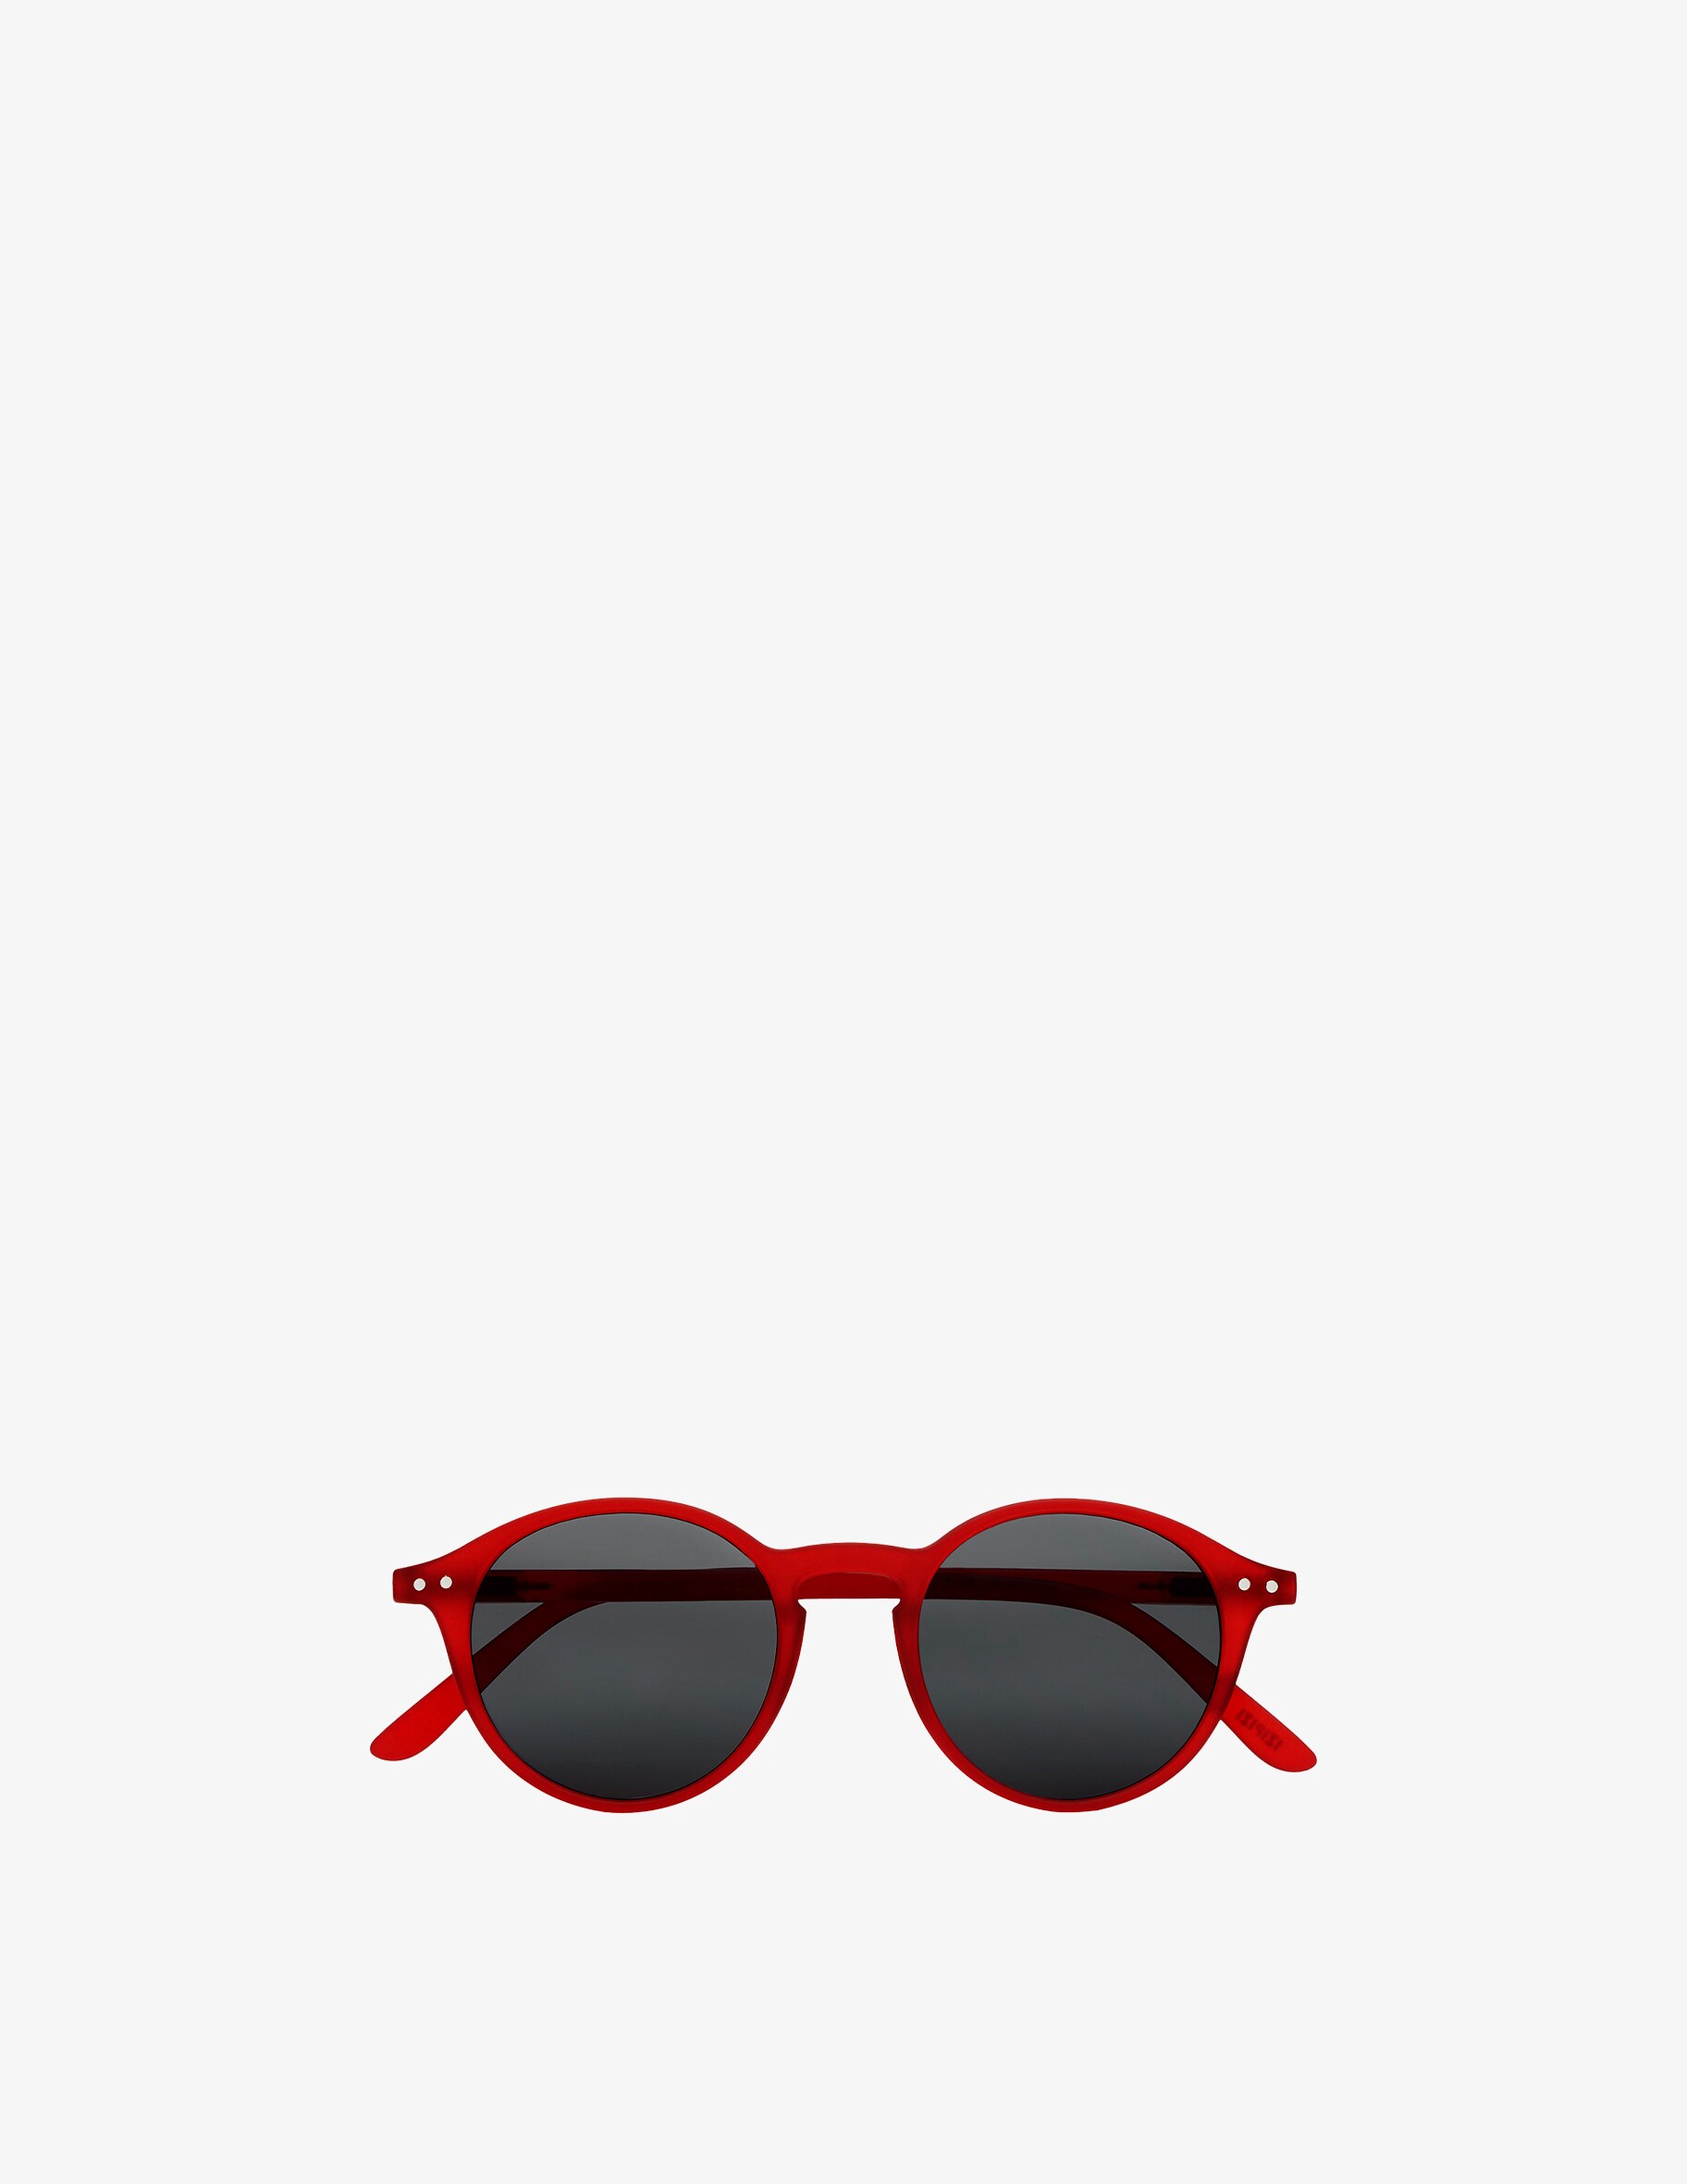 цена Солнцезащитные очки Модель #D Красные Izipizi